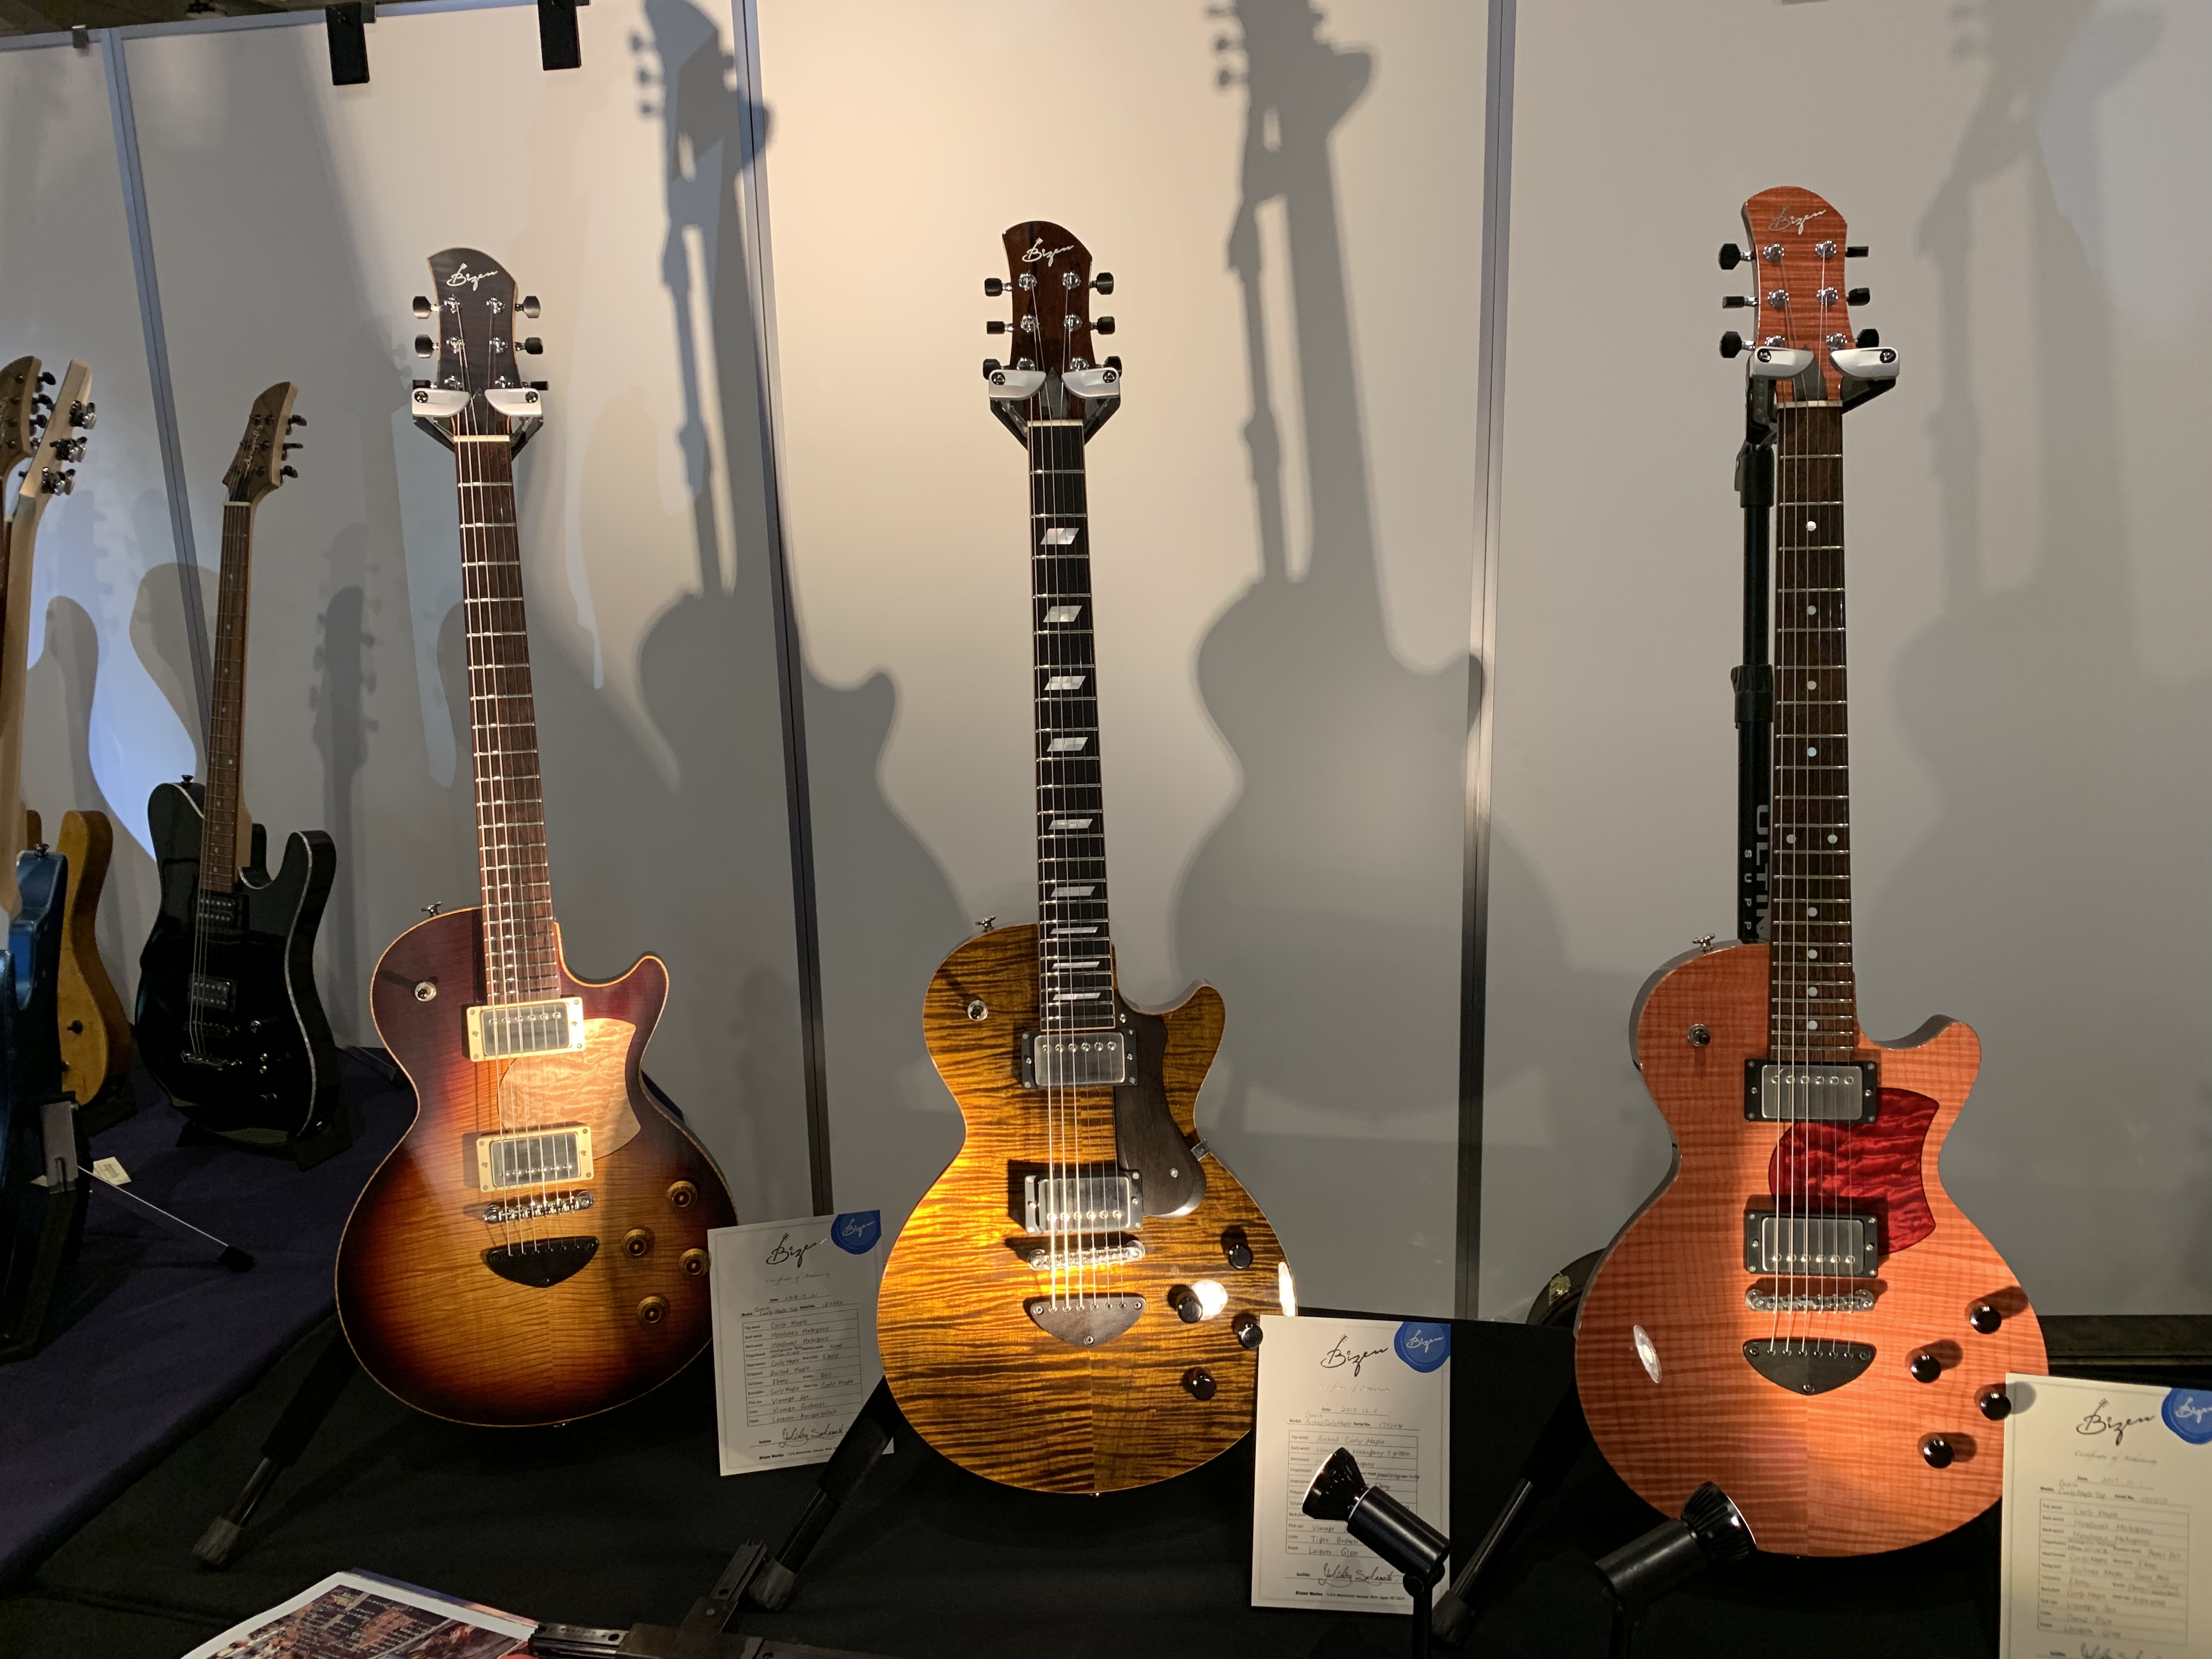 Bizen Guitars luthier interview - 2019 Sound Messe Osaka